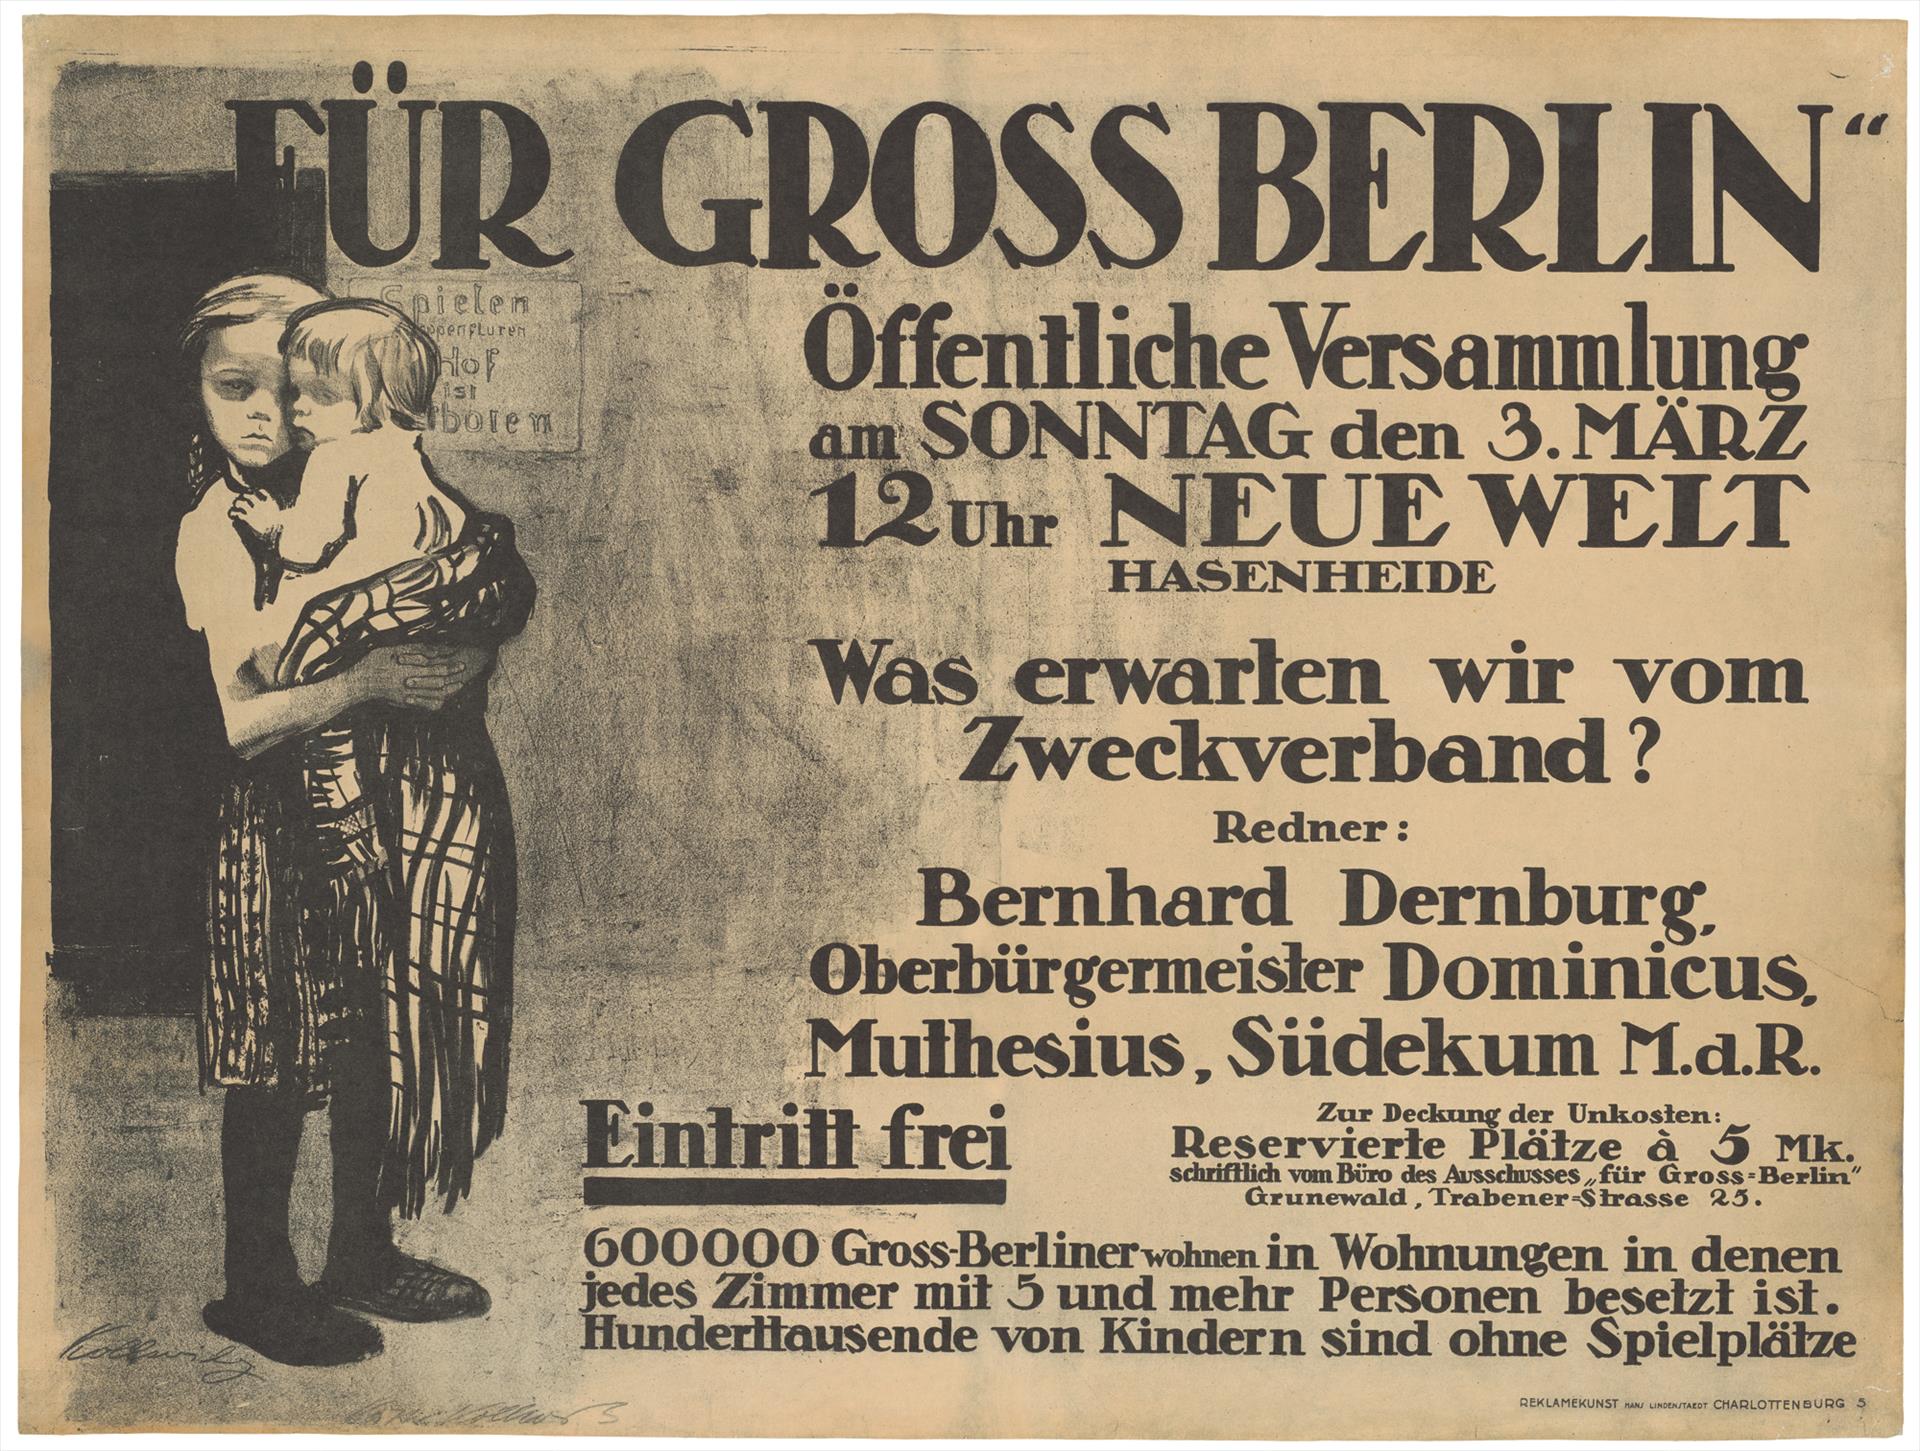 Käthe Kollwitz, affiche Pour le Grand Berlin, 1912, lithographie au crayon et pinceau (report), Kn 122 I, Collection Kollwitz de Cologne © Käthe Kollwitz Museum Köln